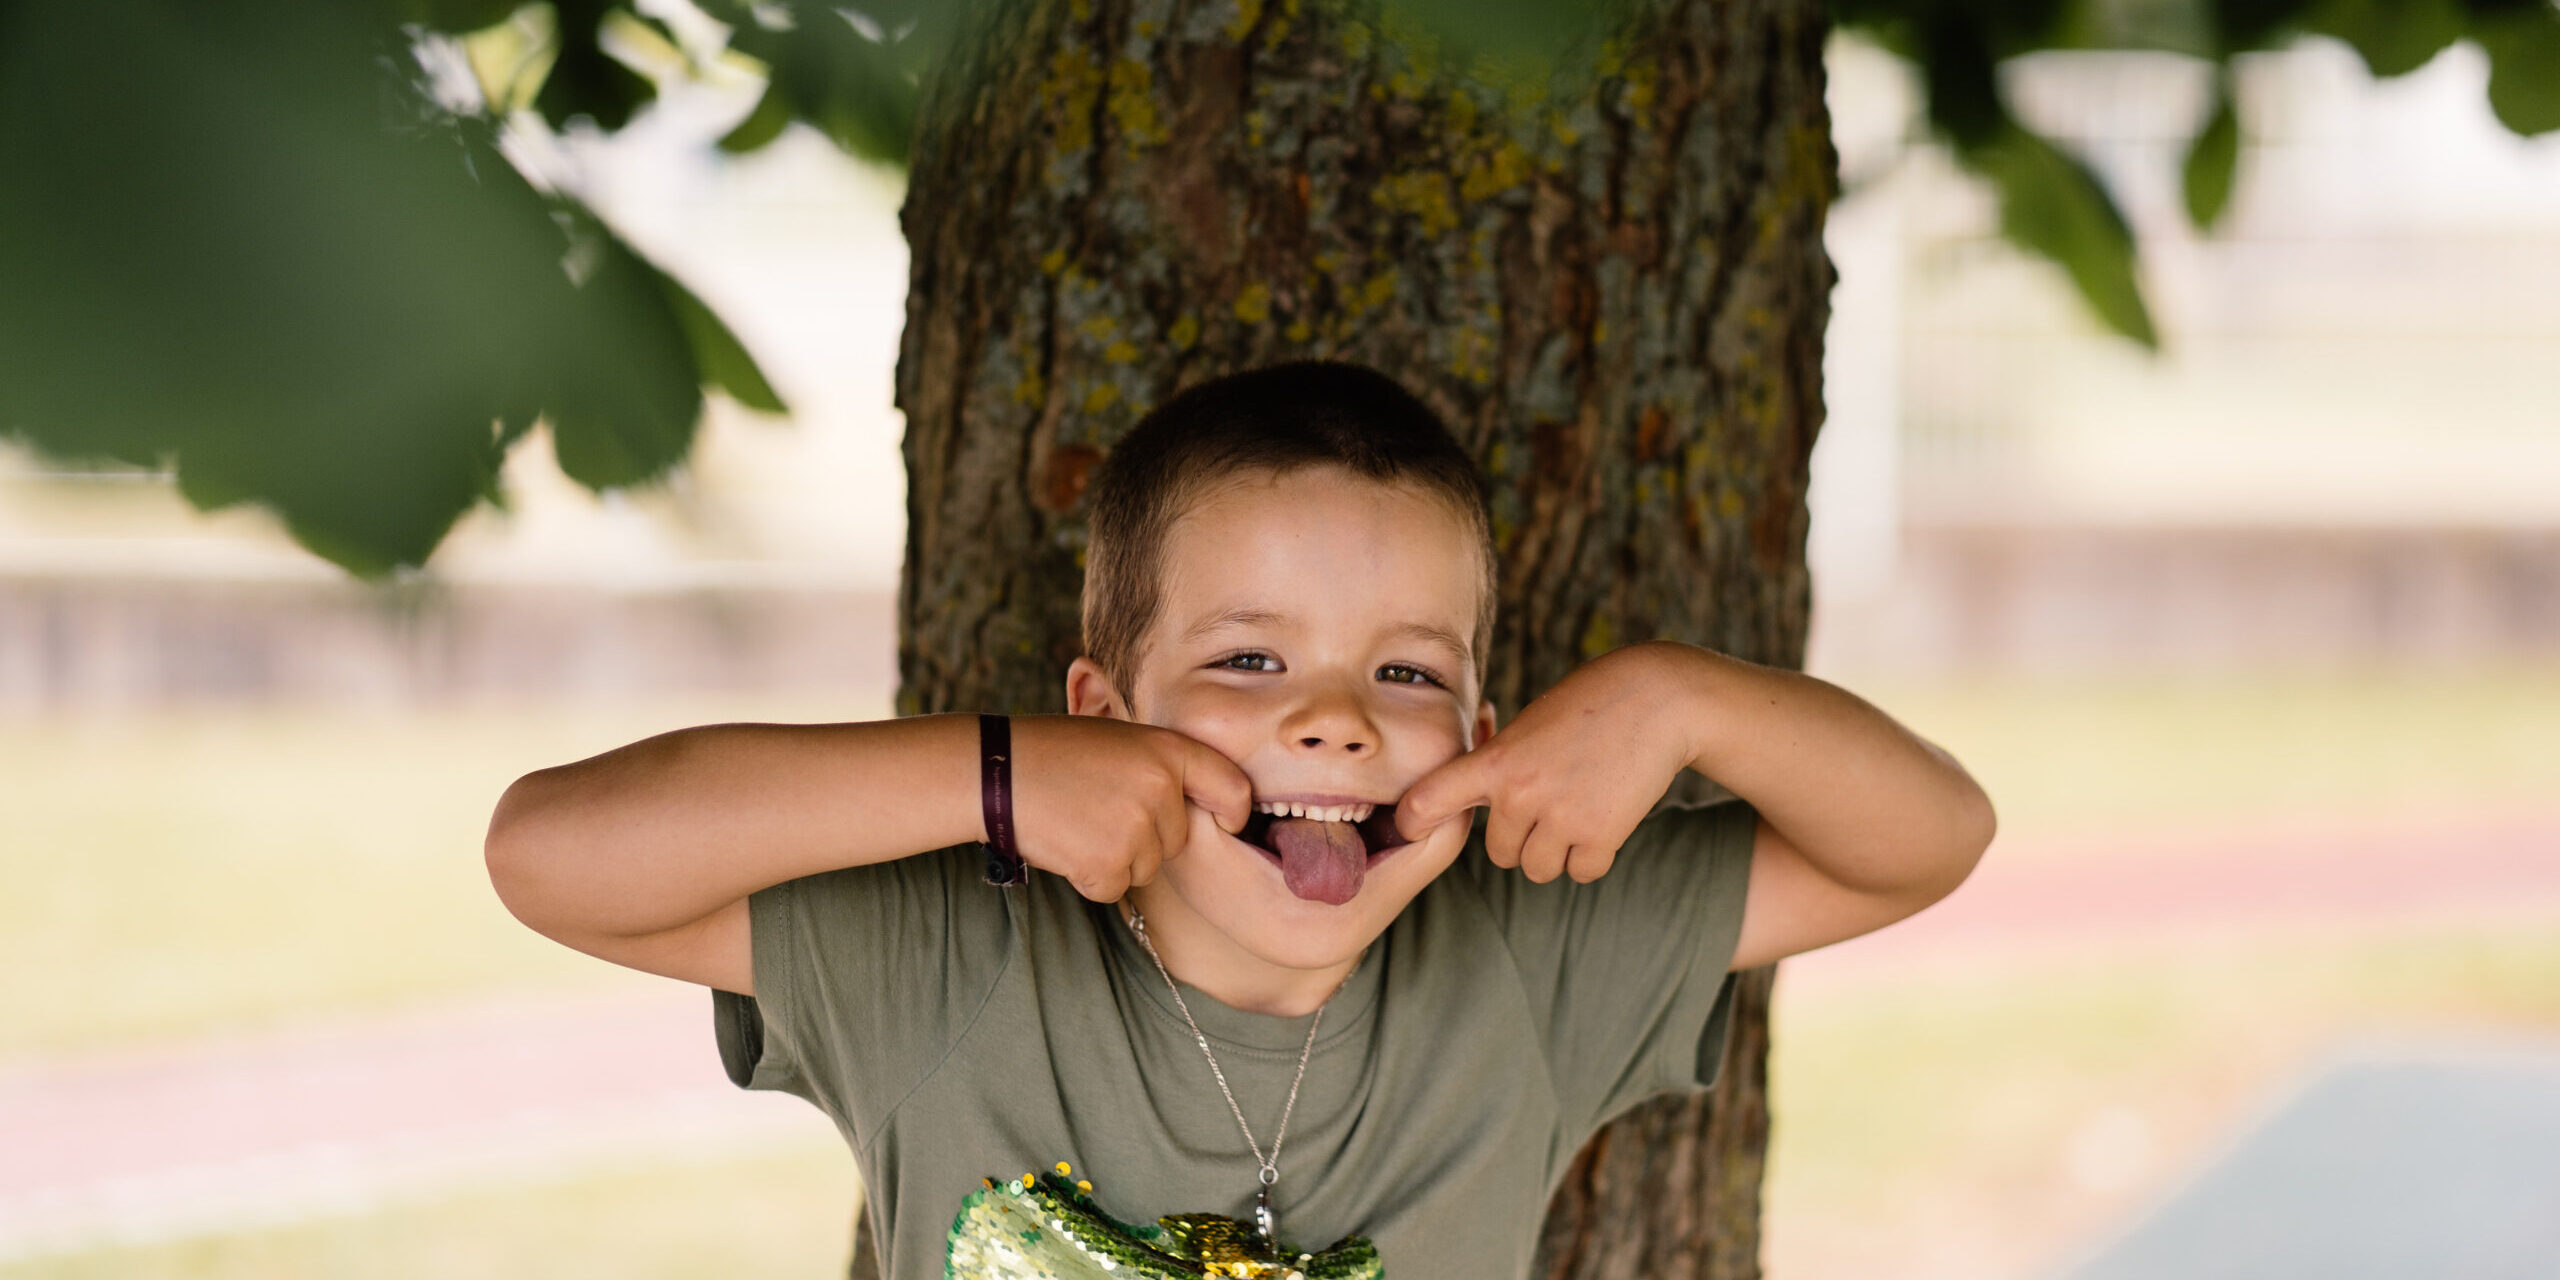 Kindergartenfoto von einem Jungen unter einem Baum, der eine Grimasse schneidet.